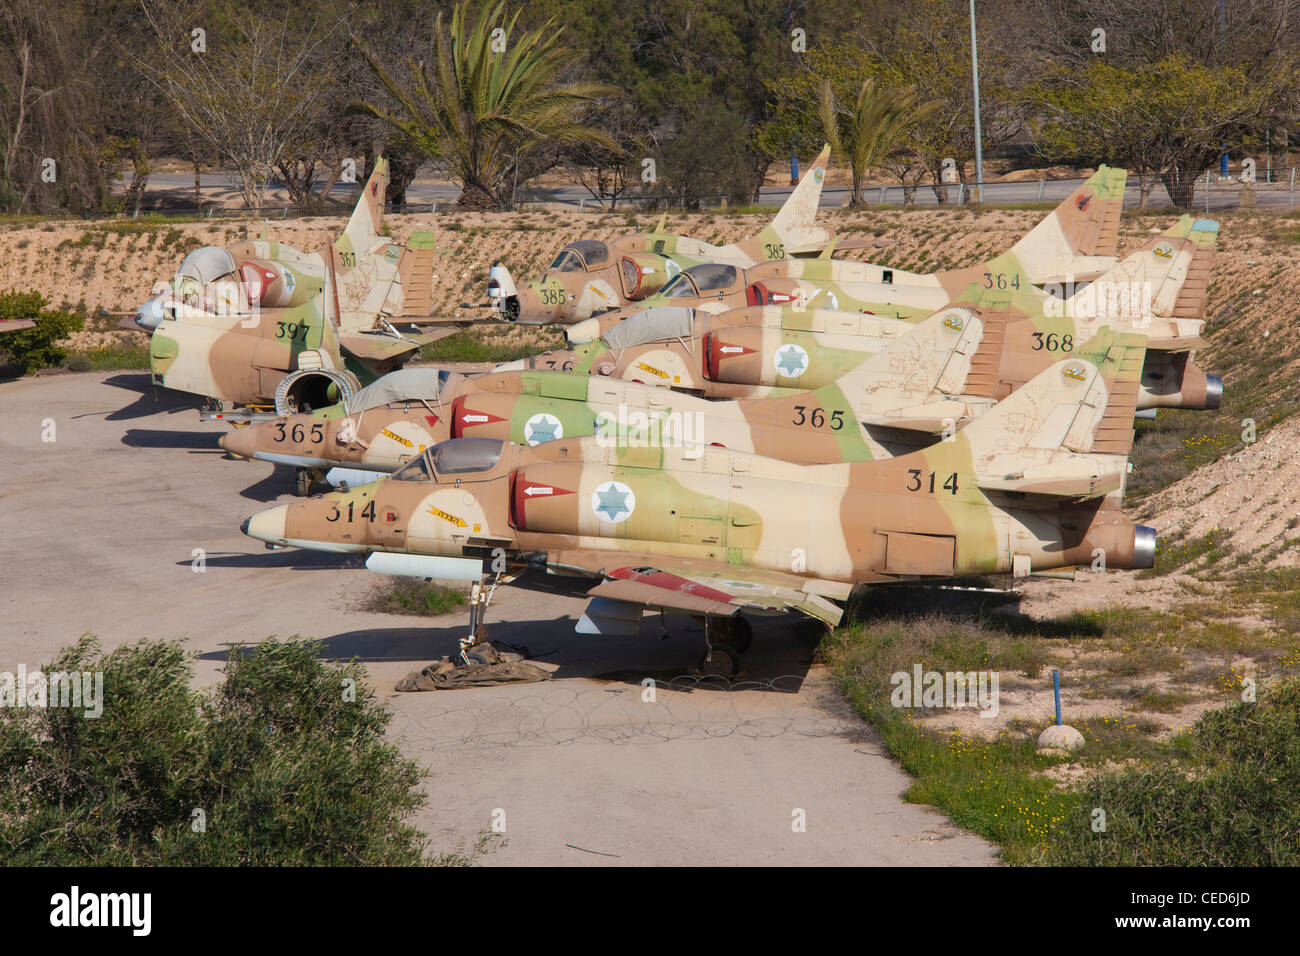 Israele, il Neghev, essere-er Sheva, Israeliano Air Force Museum, Hatzerim Israeli Air Force Base, cimitero della US-costruito A-4 fighters Foto Stock